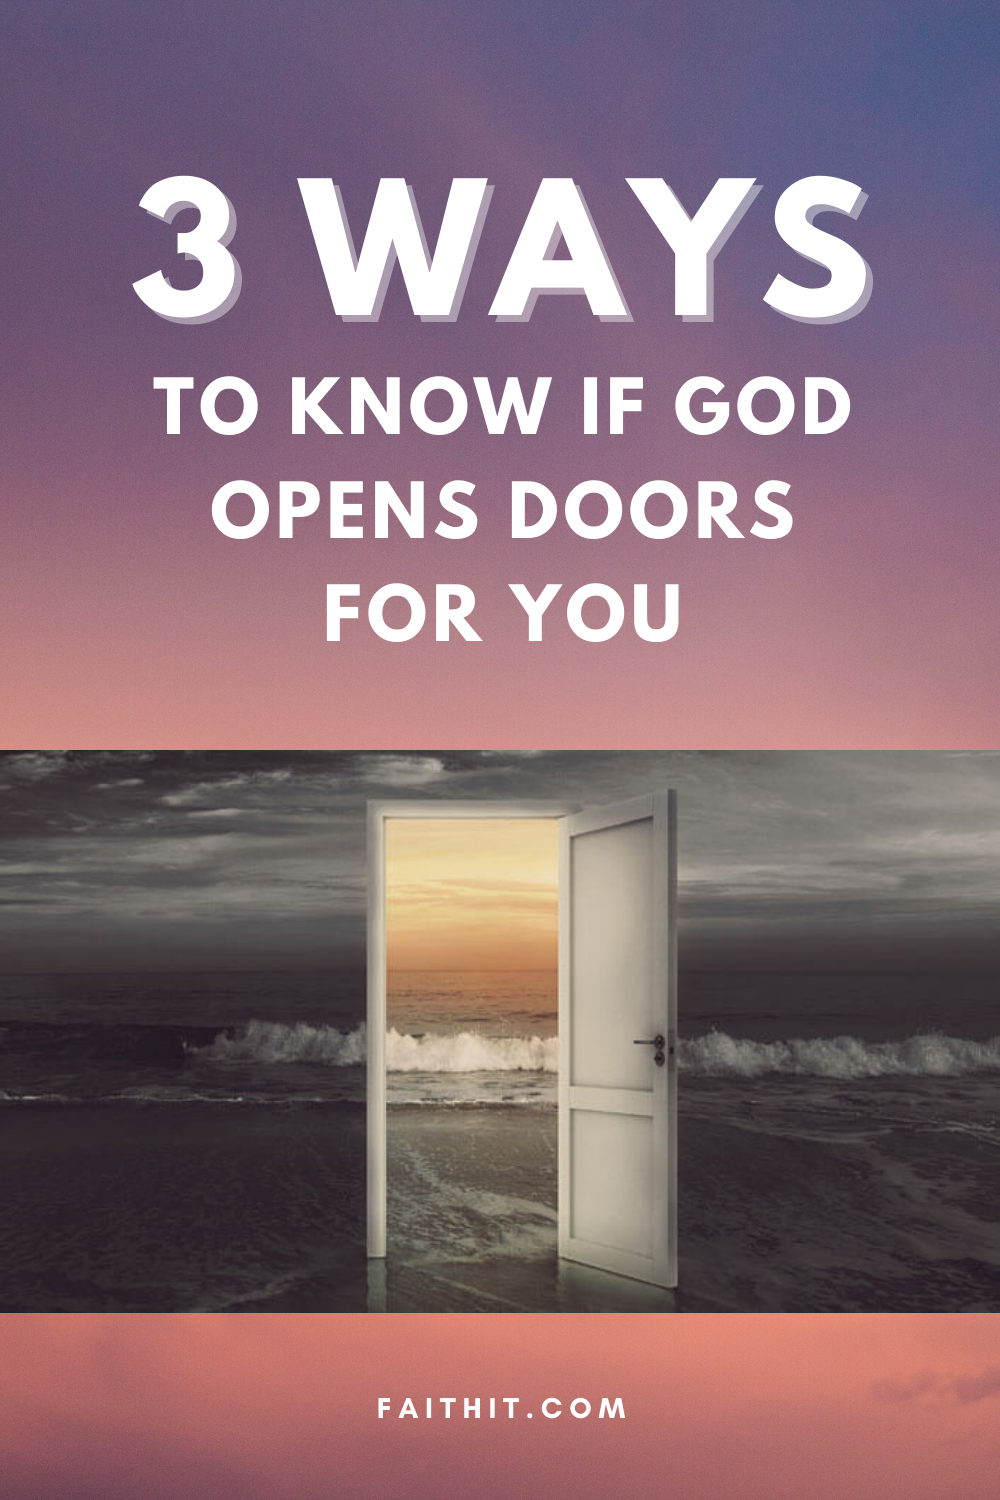 God opens door